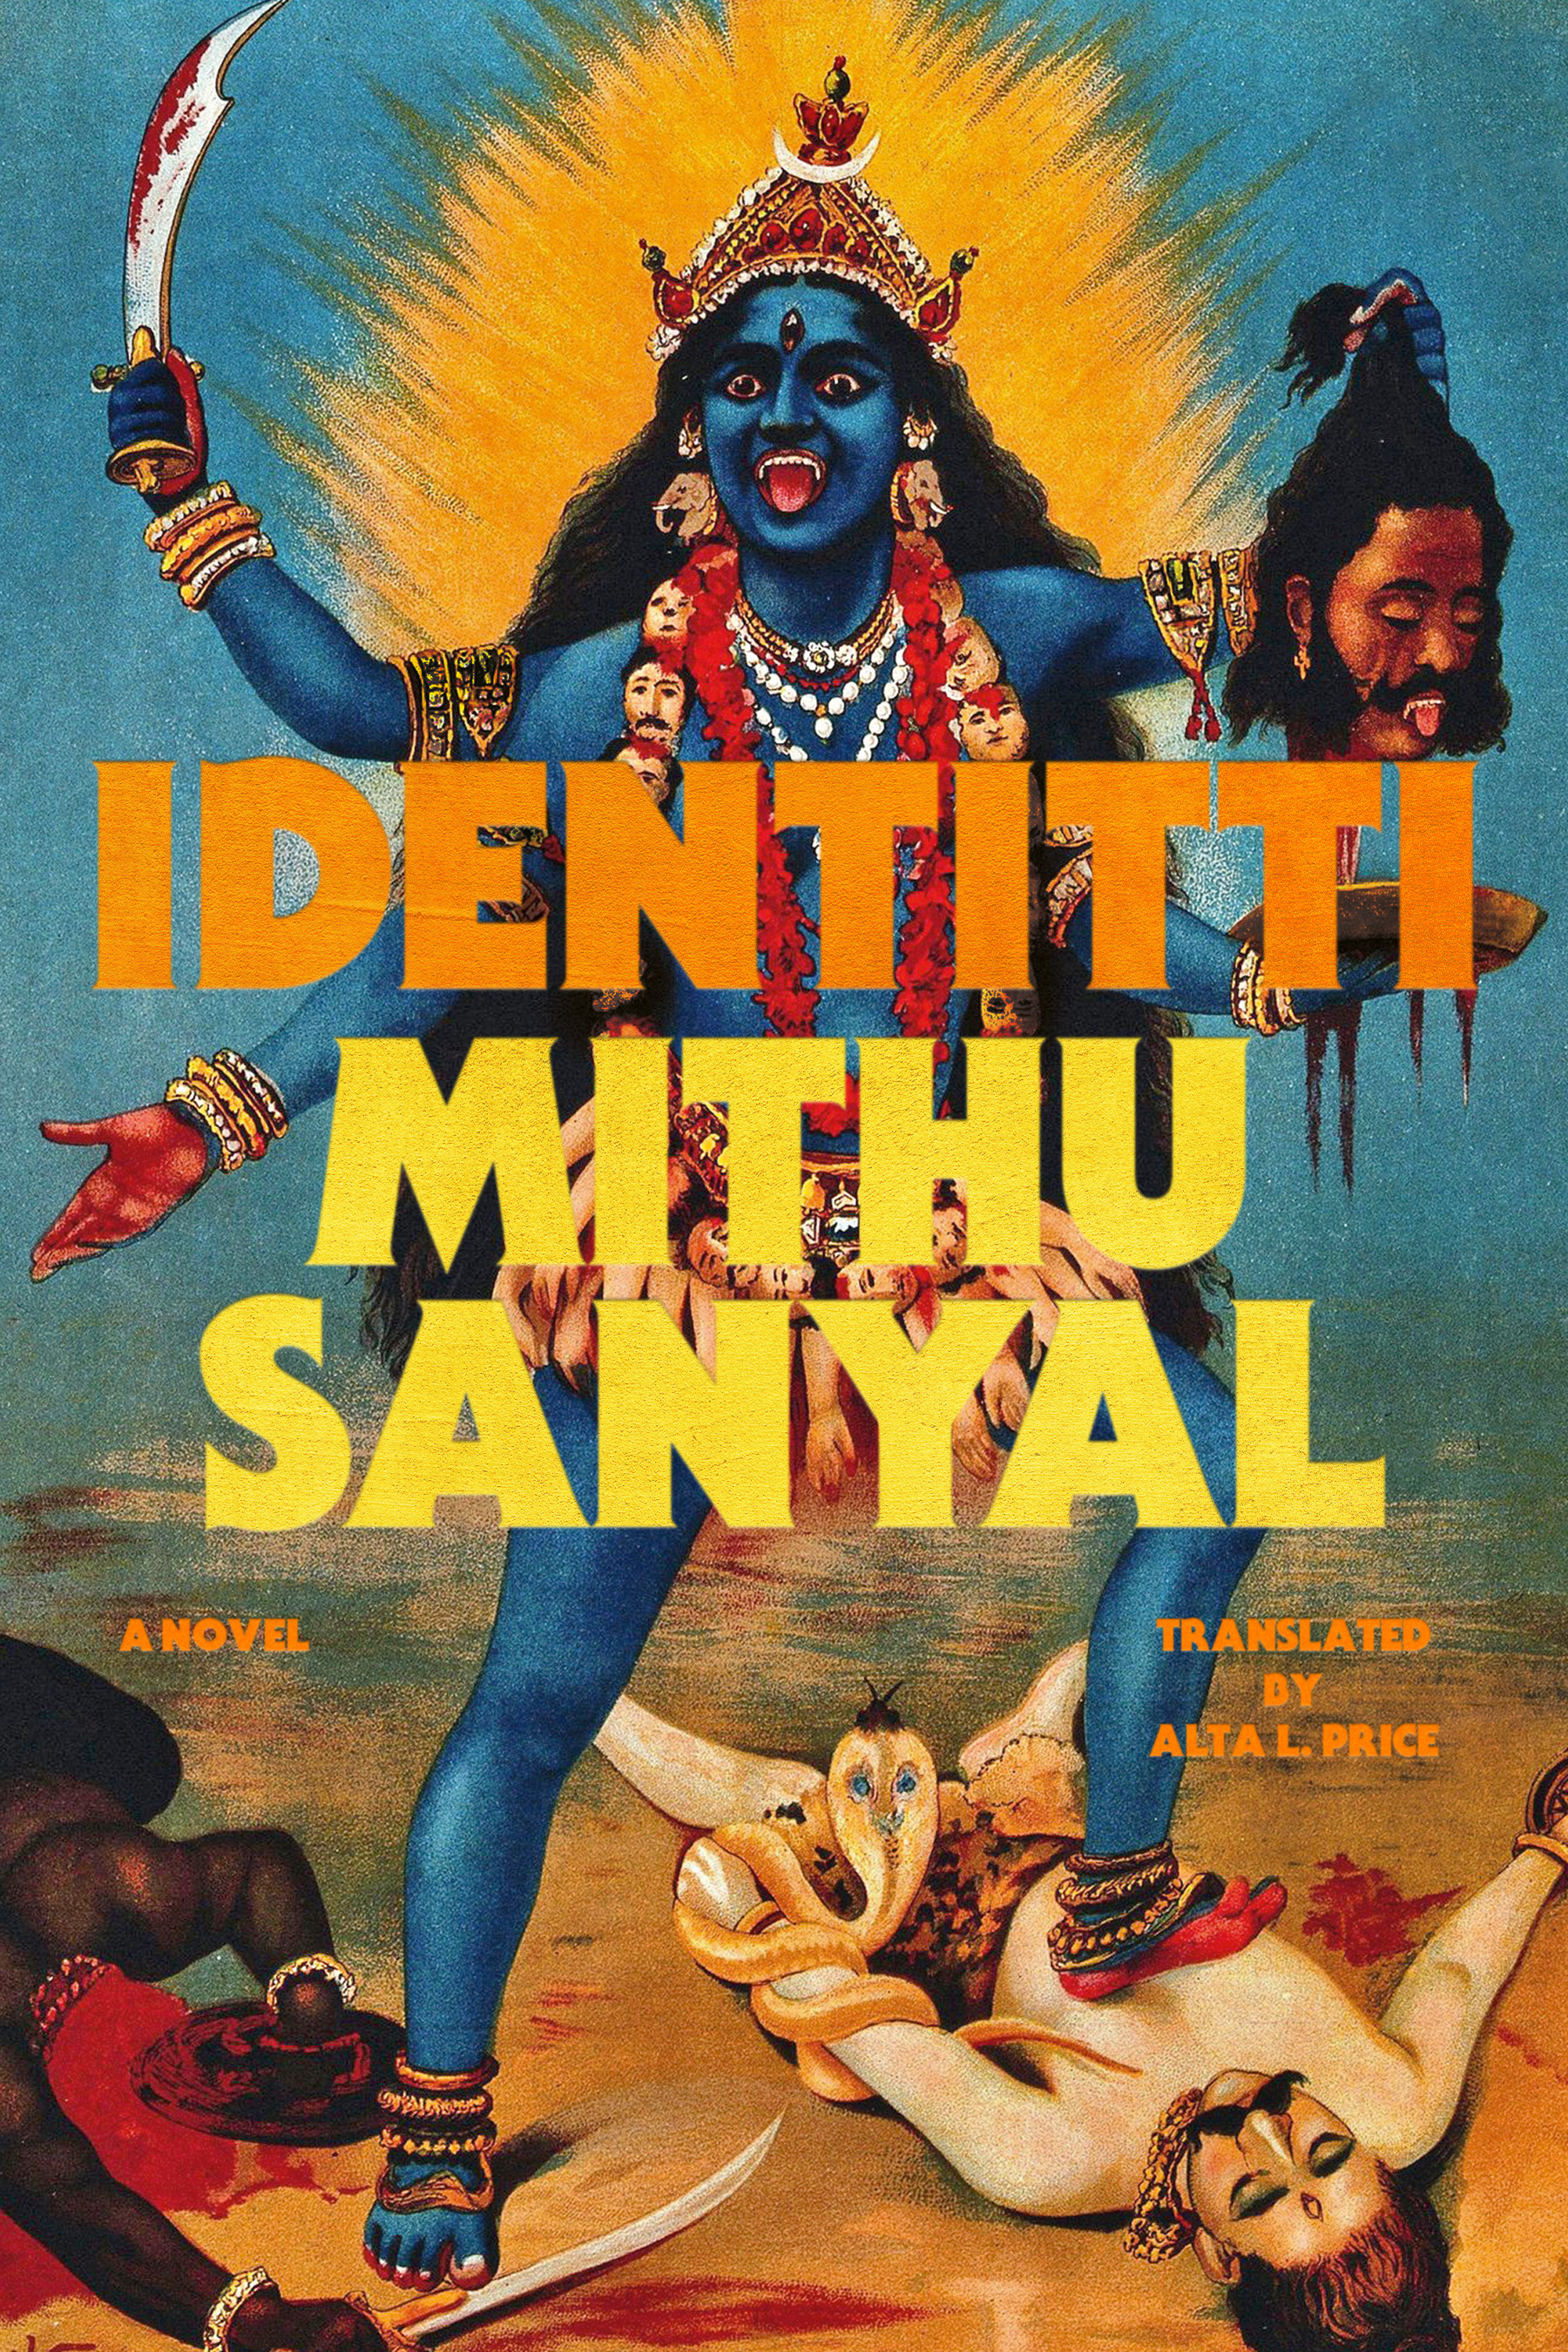 Identitti : A Novel | Sanyal, Mithu